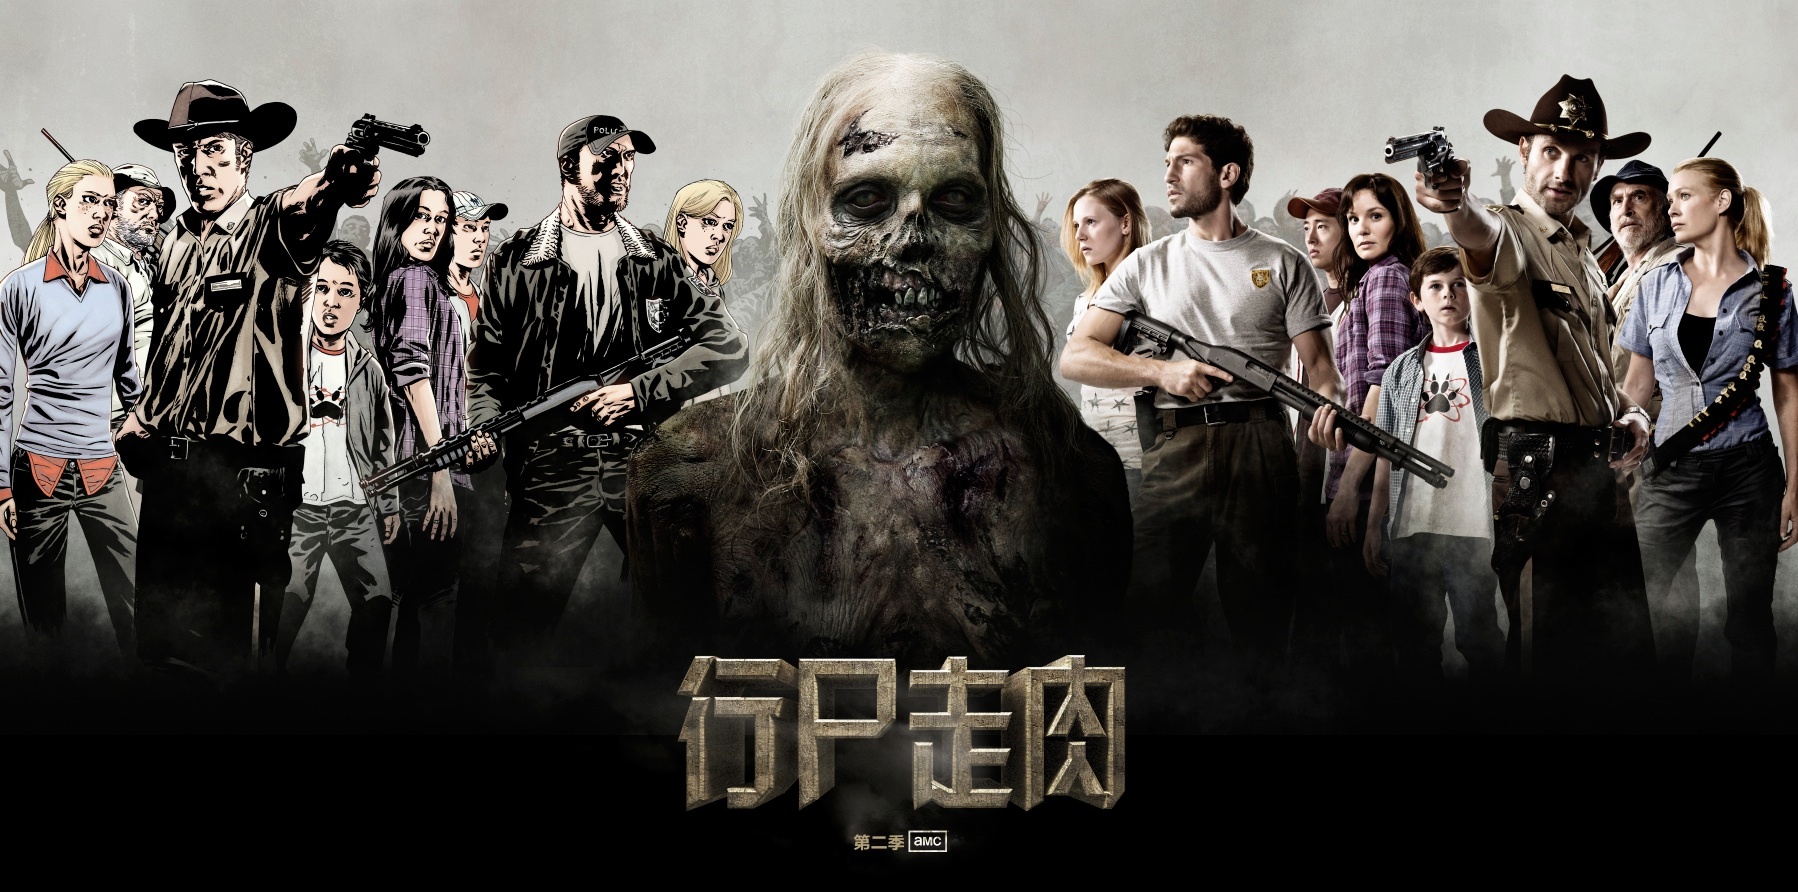 美剧【行尸走肉】The Walking Dead人物图鉴(上) - 哔哩哔哩